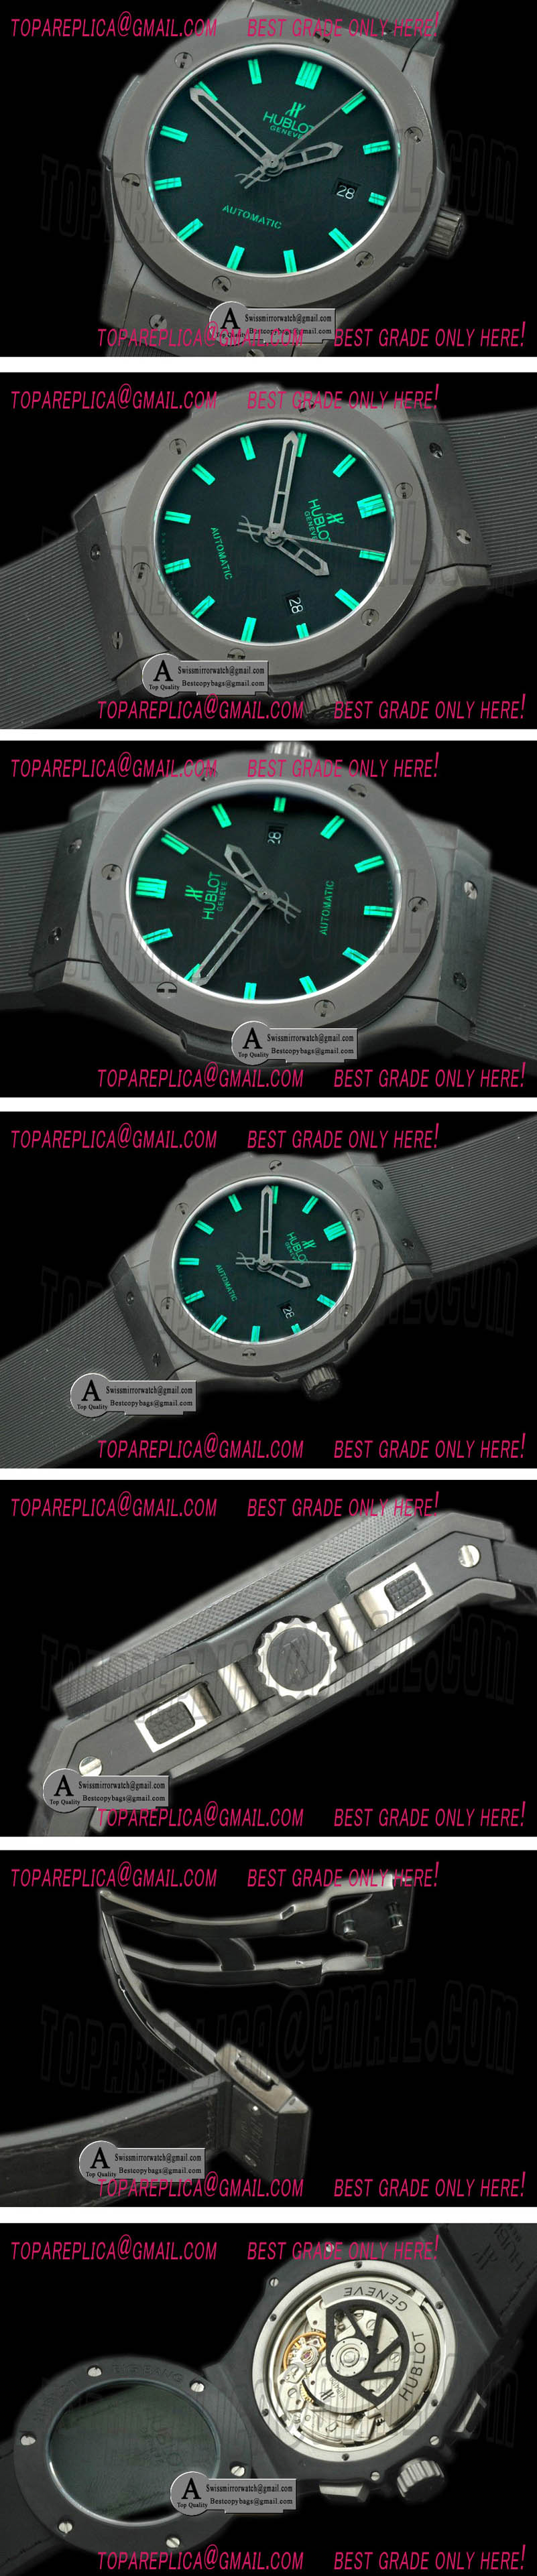 Hublot Classic Fusion Ceramic/Rubber Black/Grn A-2824 Replica Watches